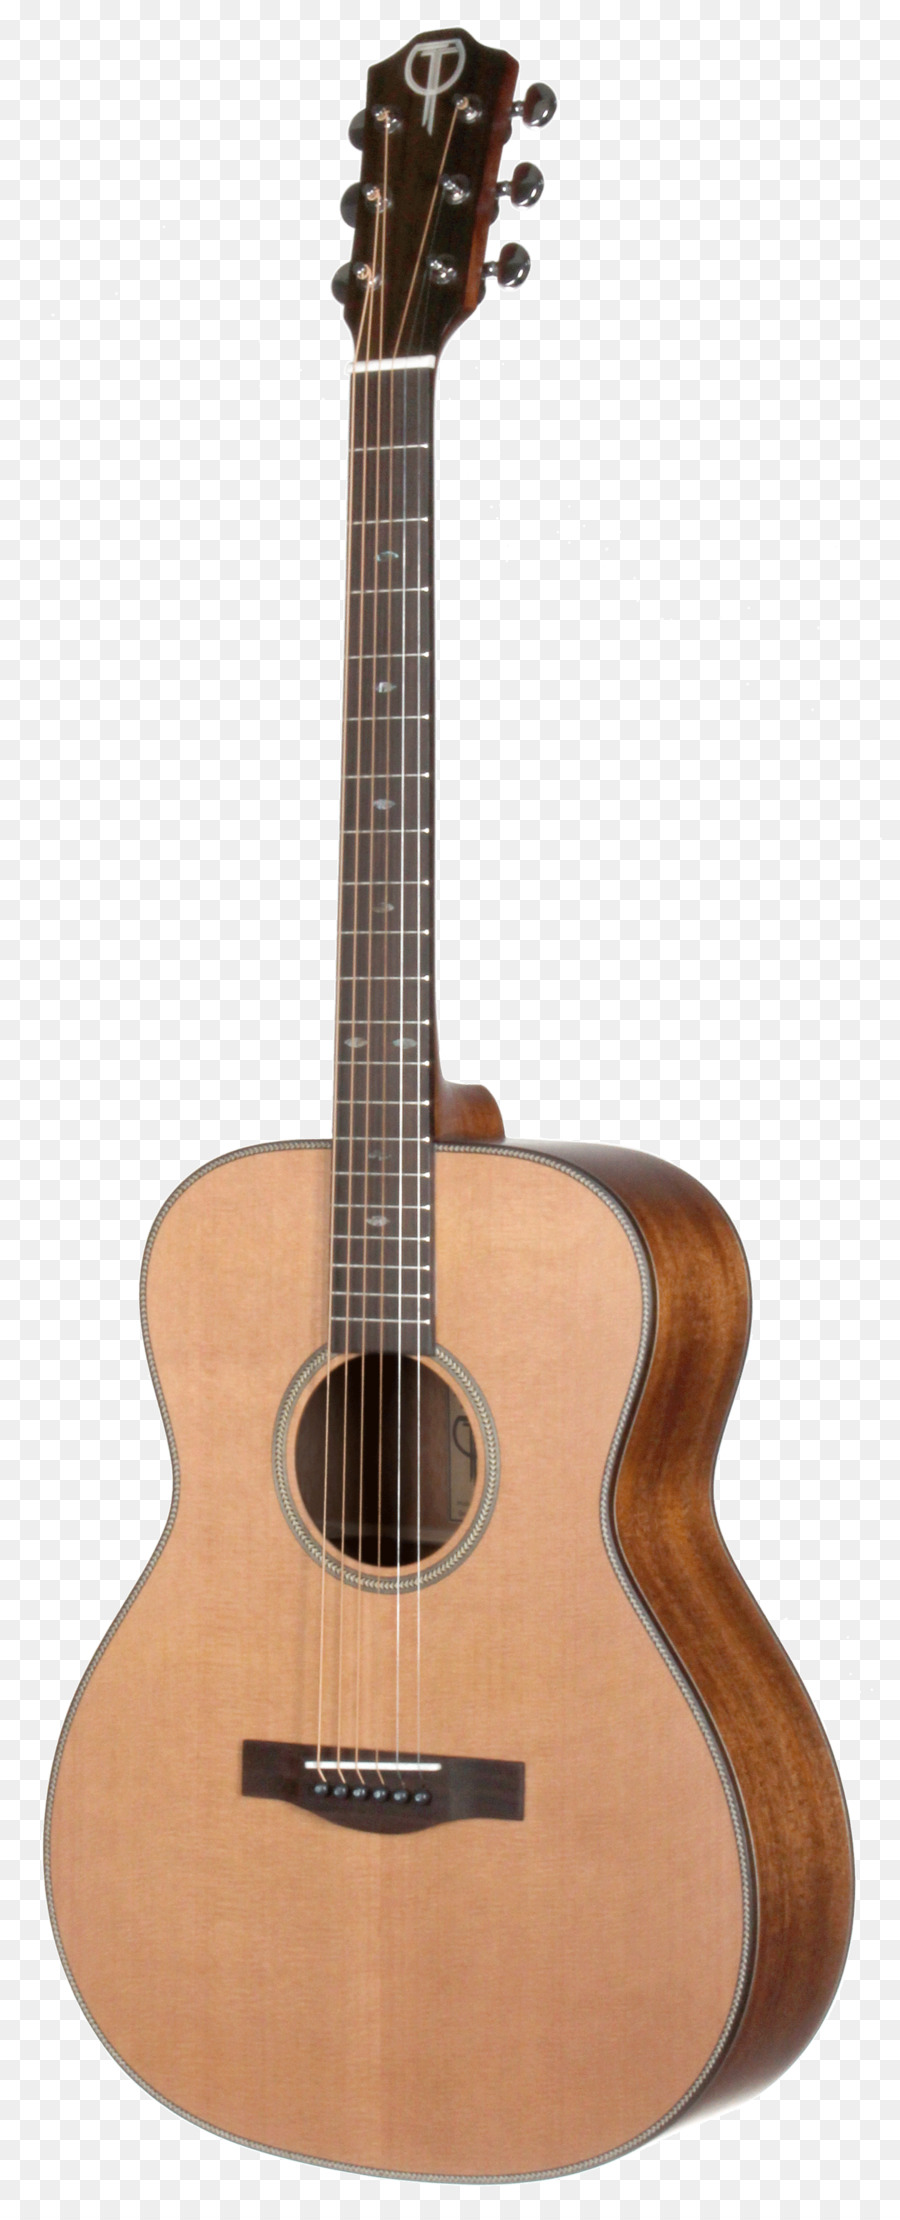 Thép-string guitar Điện guitar Ramirez Guitar - đàn ghi ta